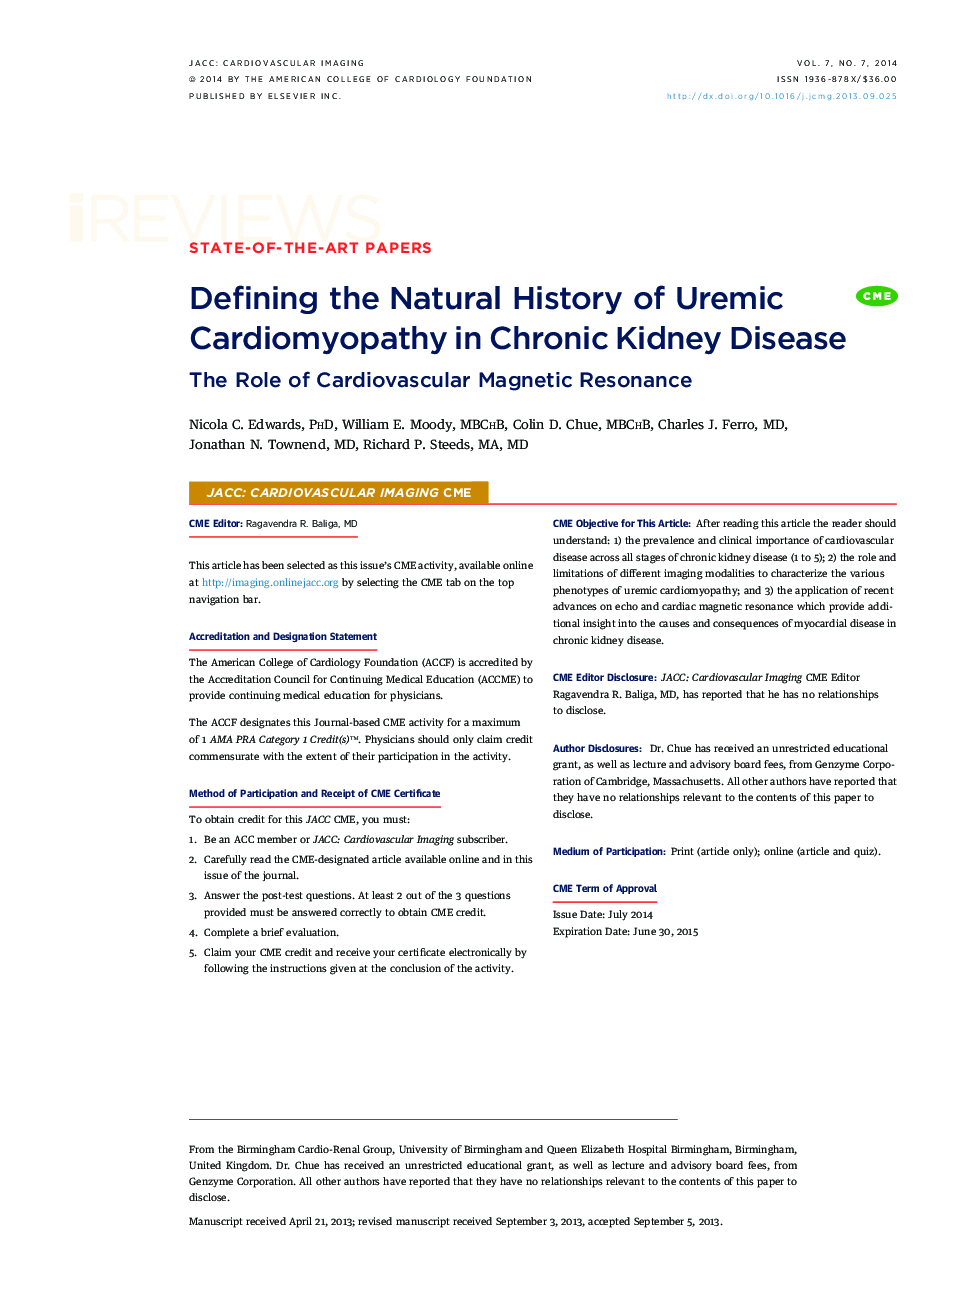 تعریف تاریخ طبیعی قلب و عروق اورمیک در بیماری مزمن کلیه: نقش رزونانس مغناطیسی قلب و عروق 